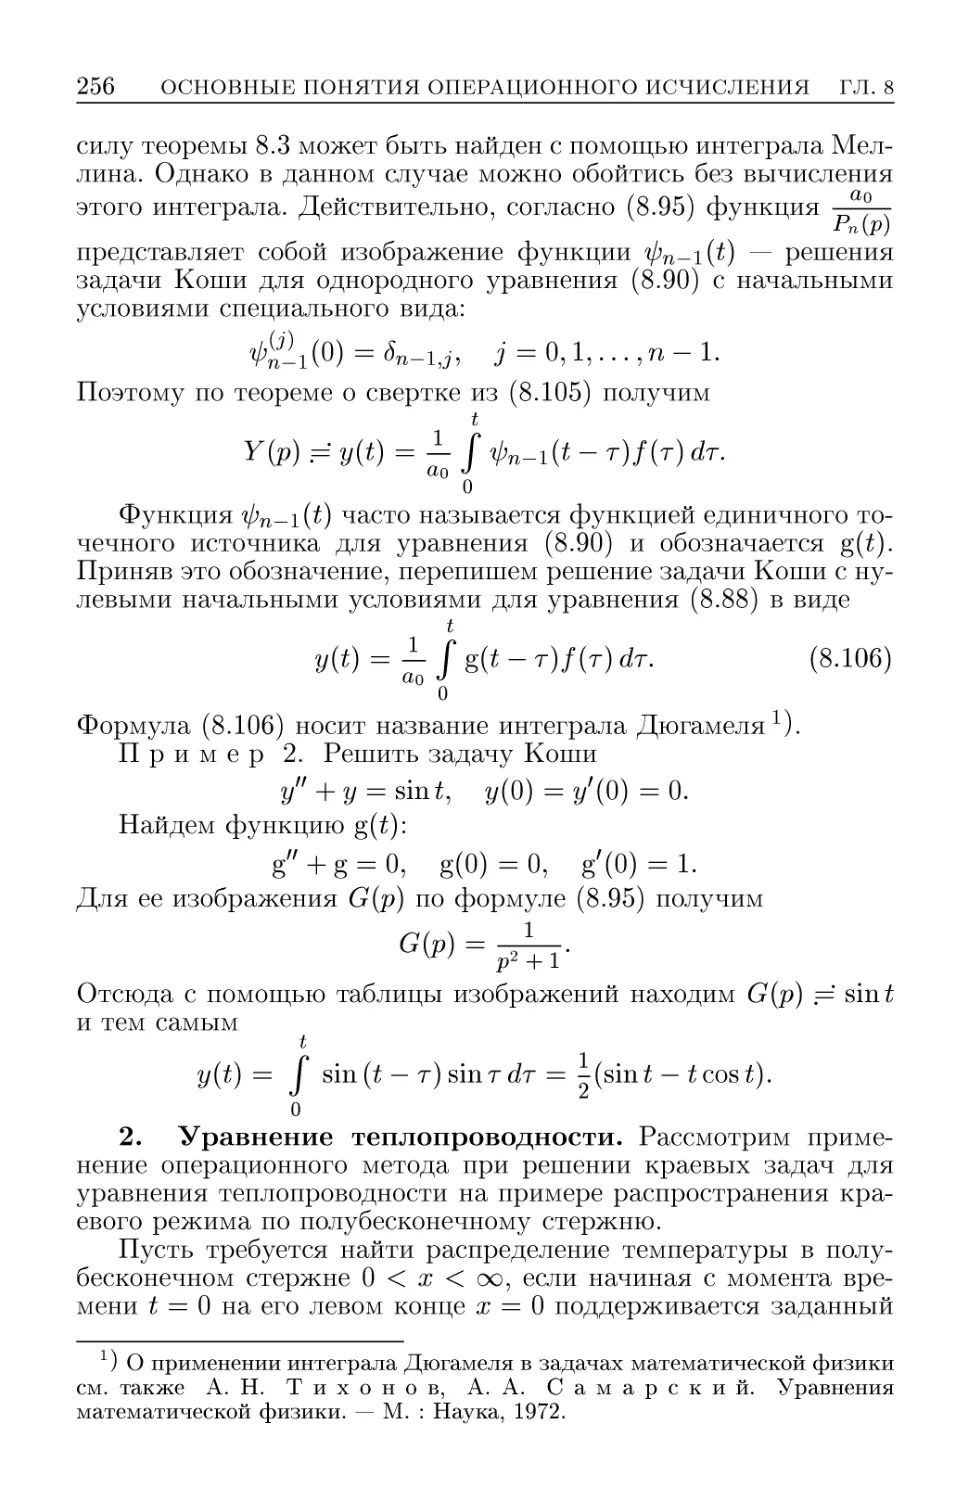 2. Уравнение теплопроводности